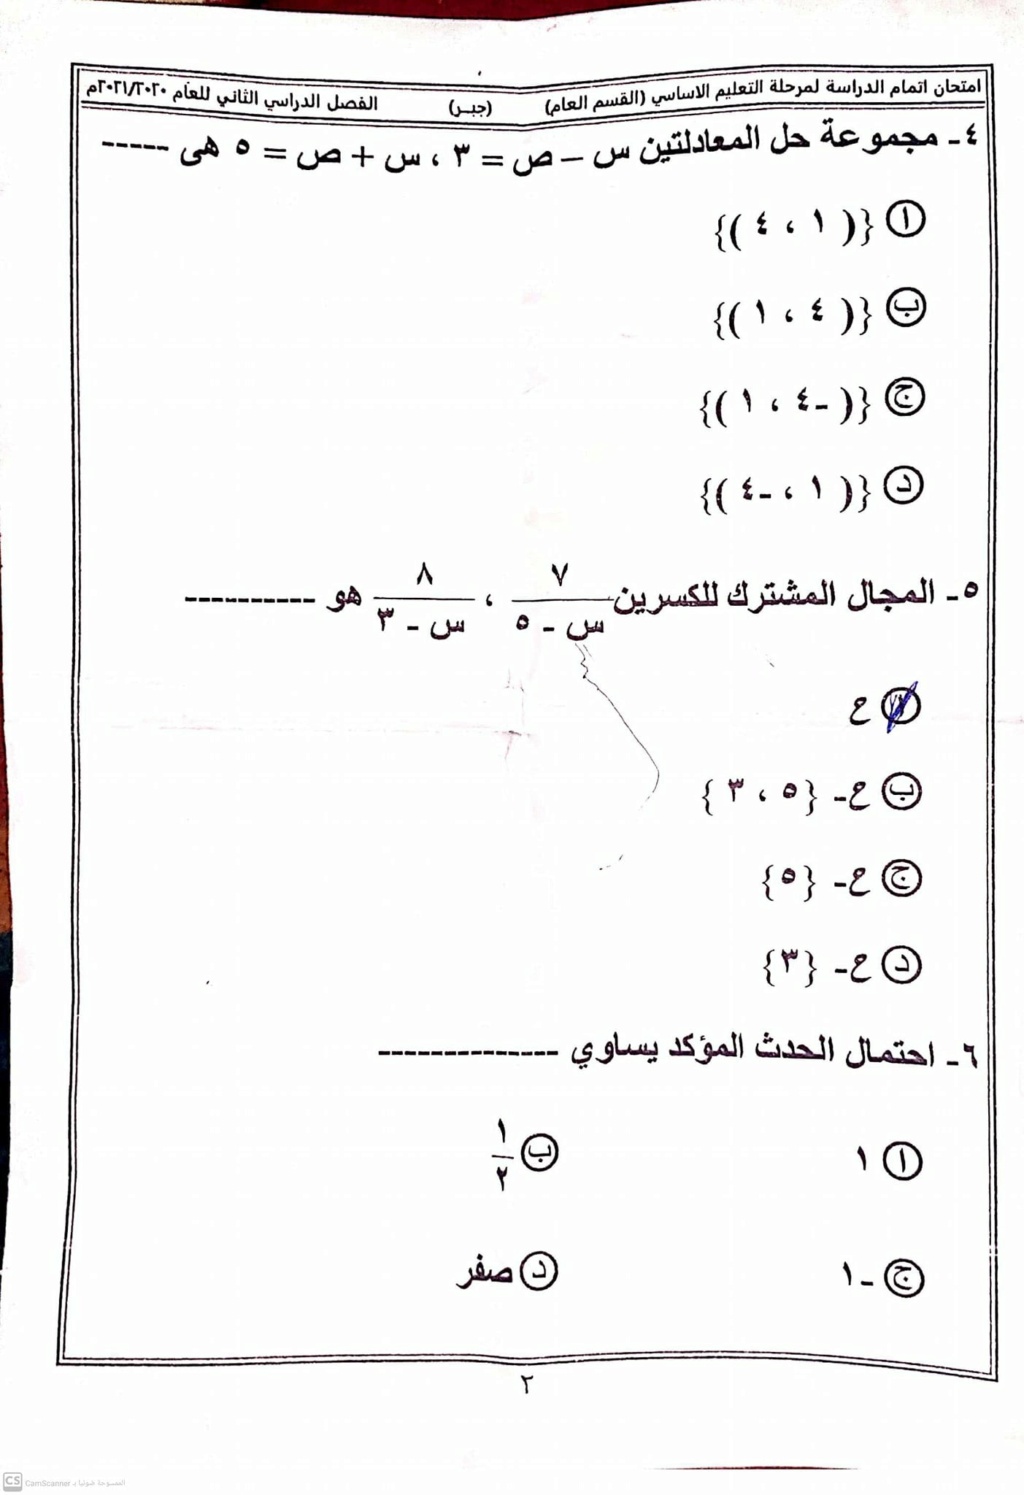  امتحان الجبر للشهادة الإعدادية ترم ثاني ٢٠٢١ محافظة شمال سيناء 22652